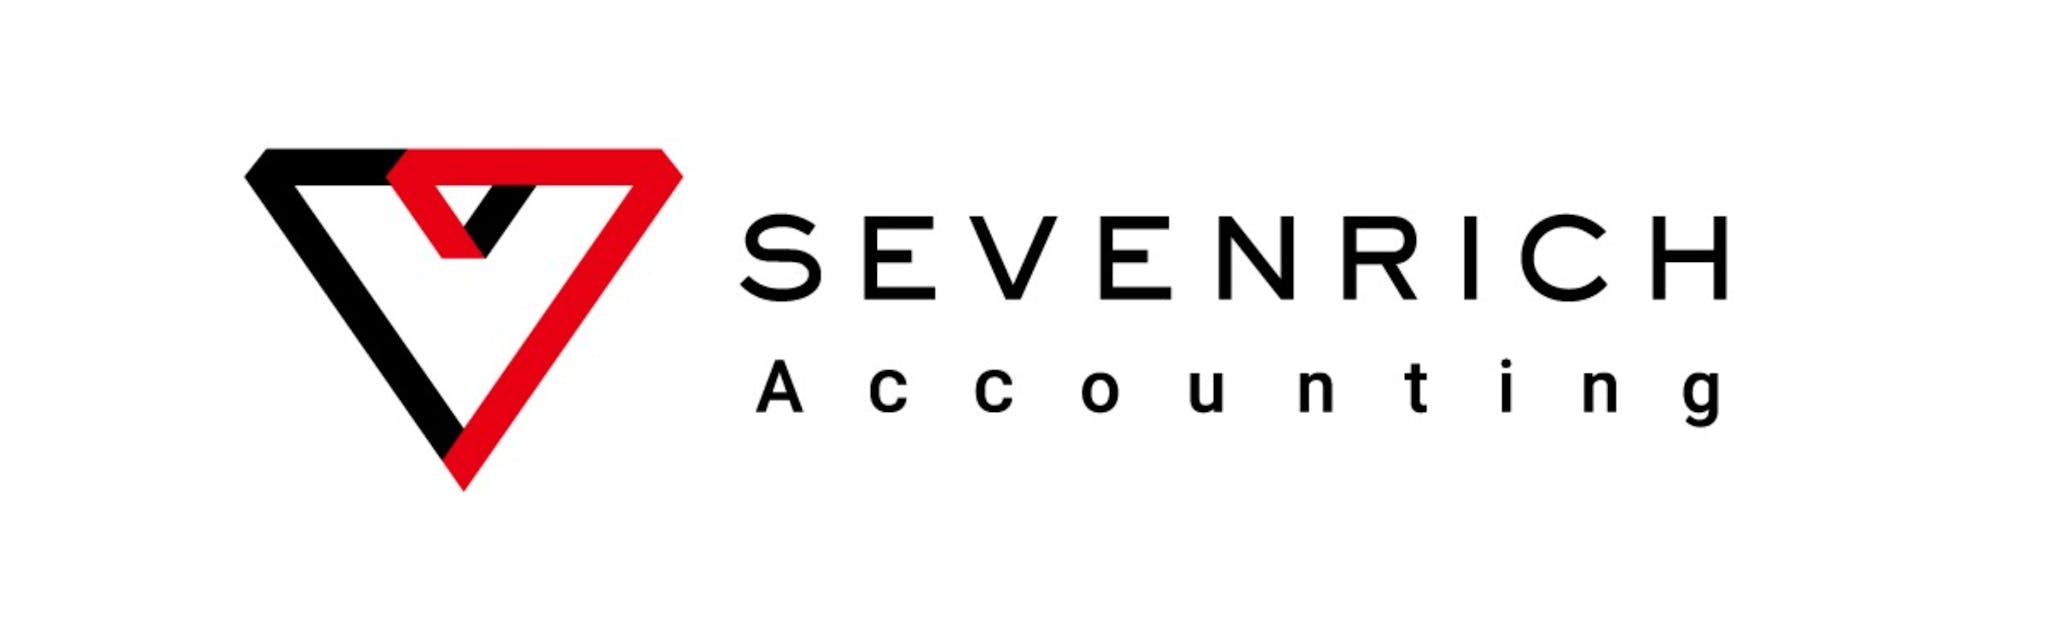 株式会社SEVENRICH Accounting - カバー画像